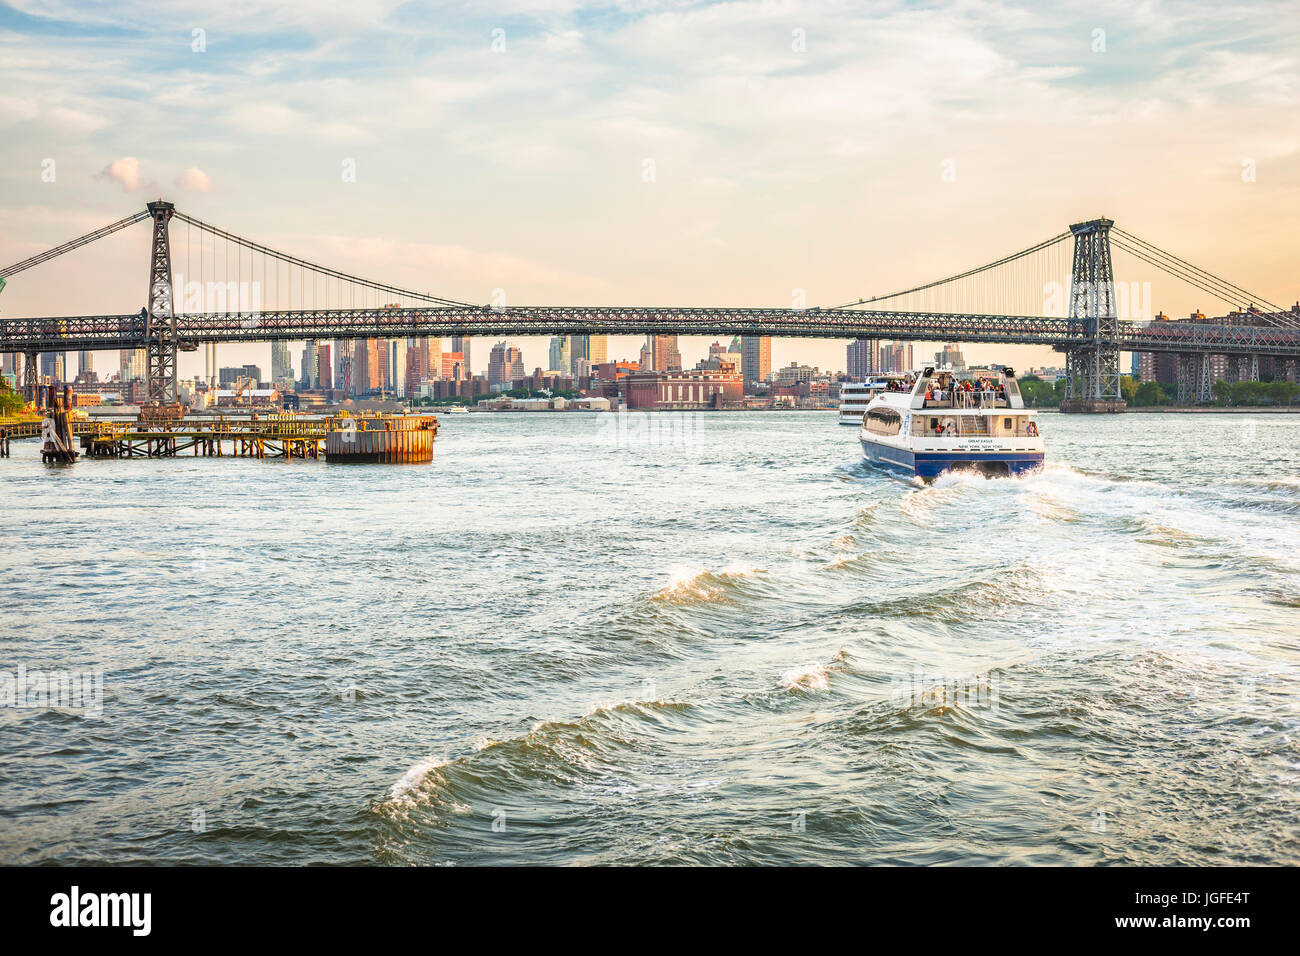 New York, le pont de Williamsburg. Le traversier navigue sur l'East River. Banque D'Images